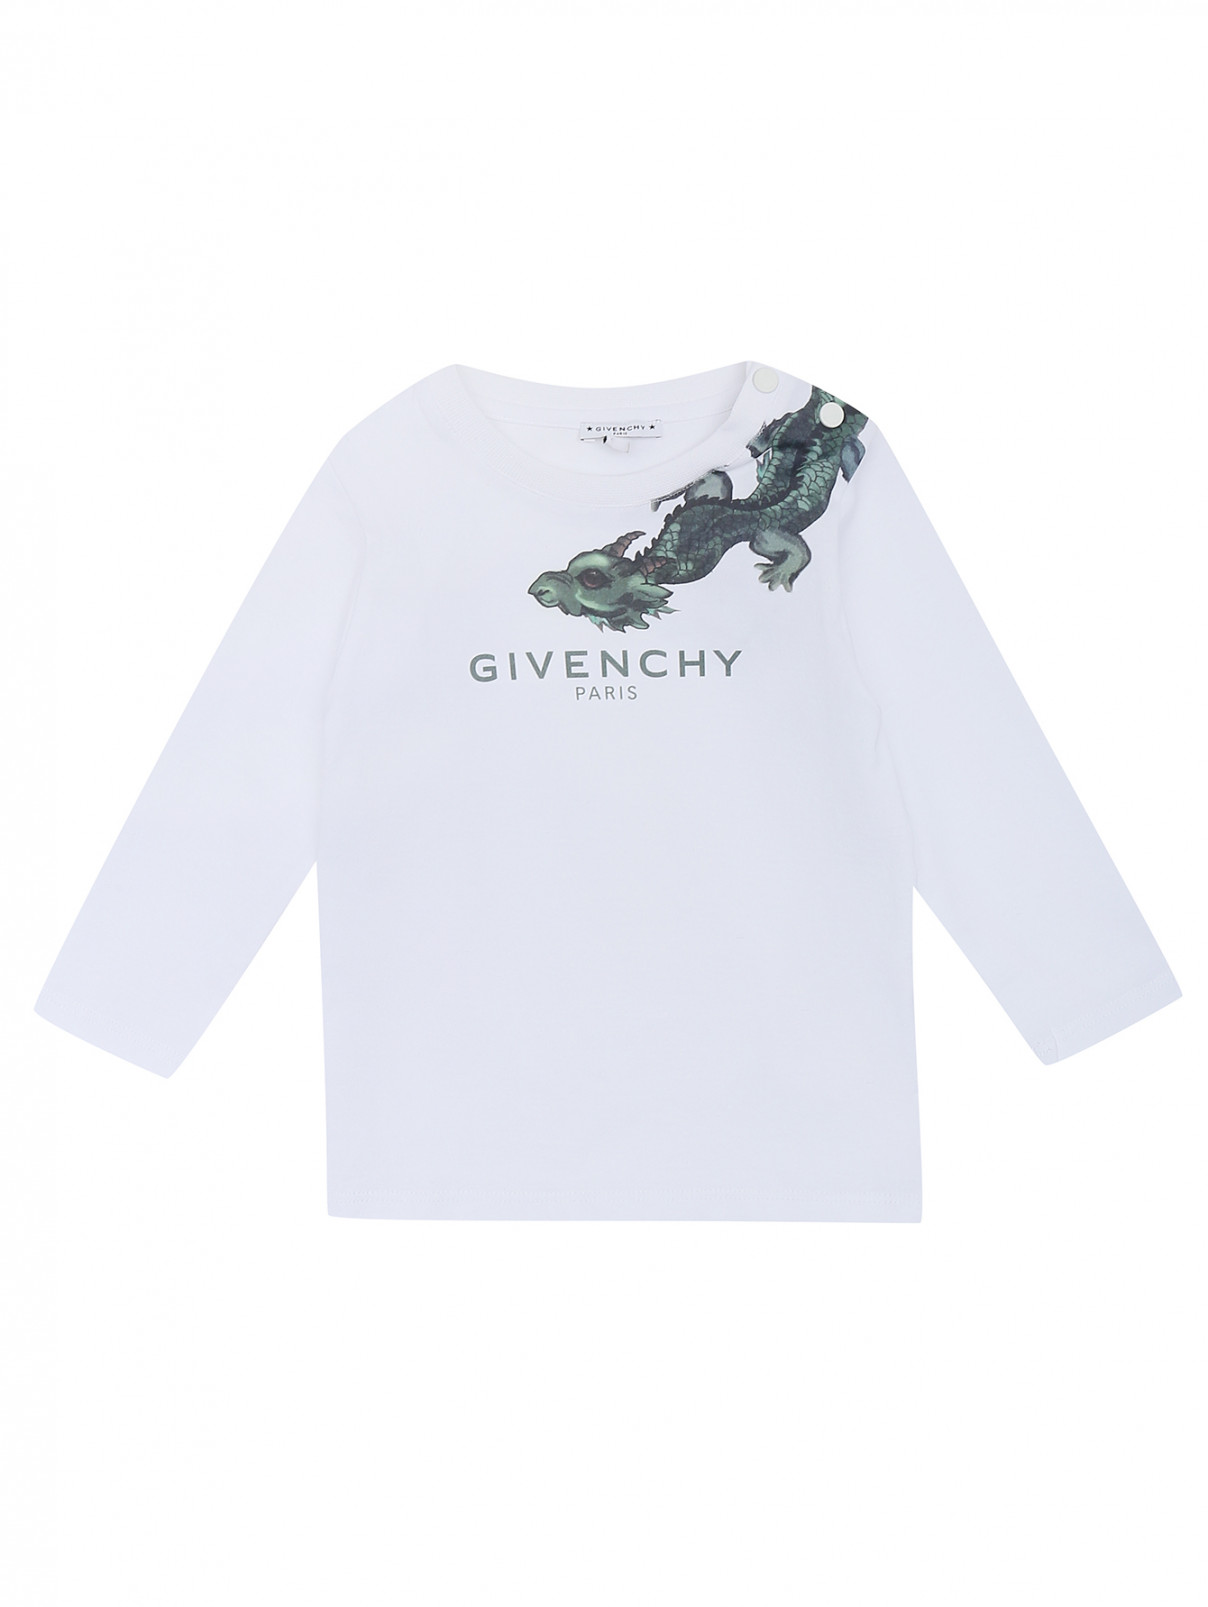 Лонгслив из хлопка с принтом Givenchy  –  Общий вид  – Цвет:  Белый